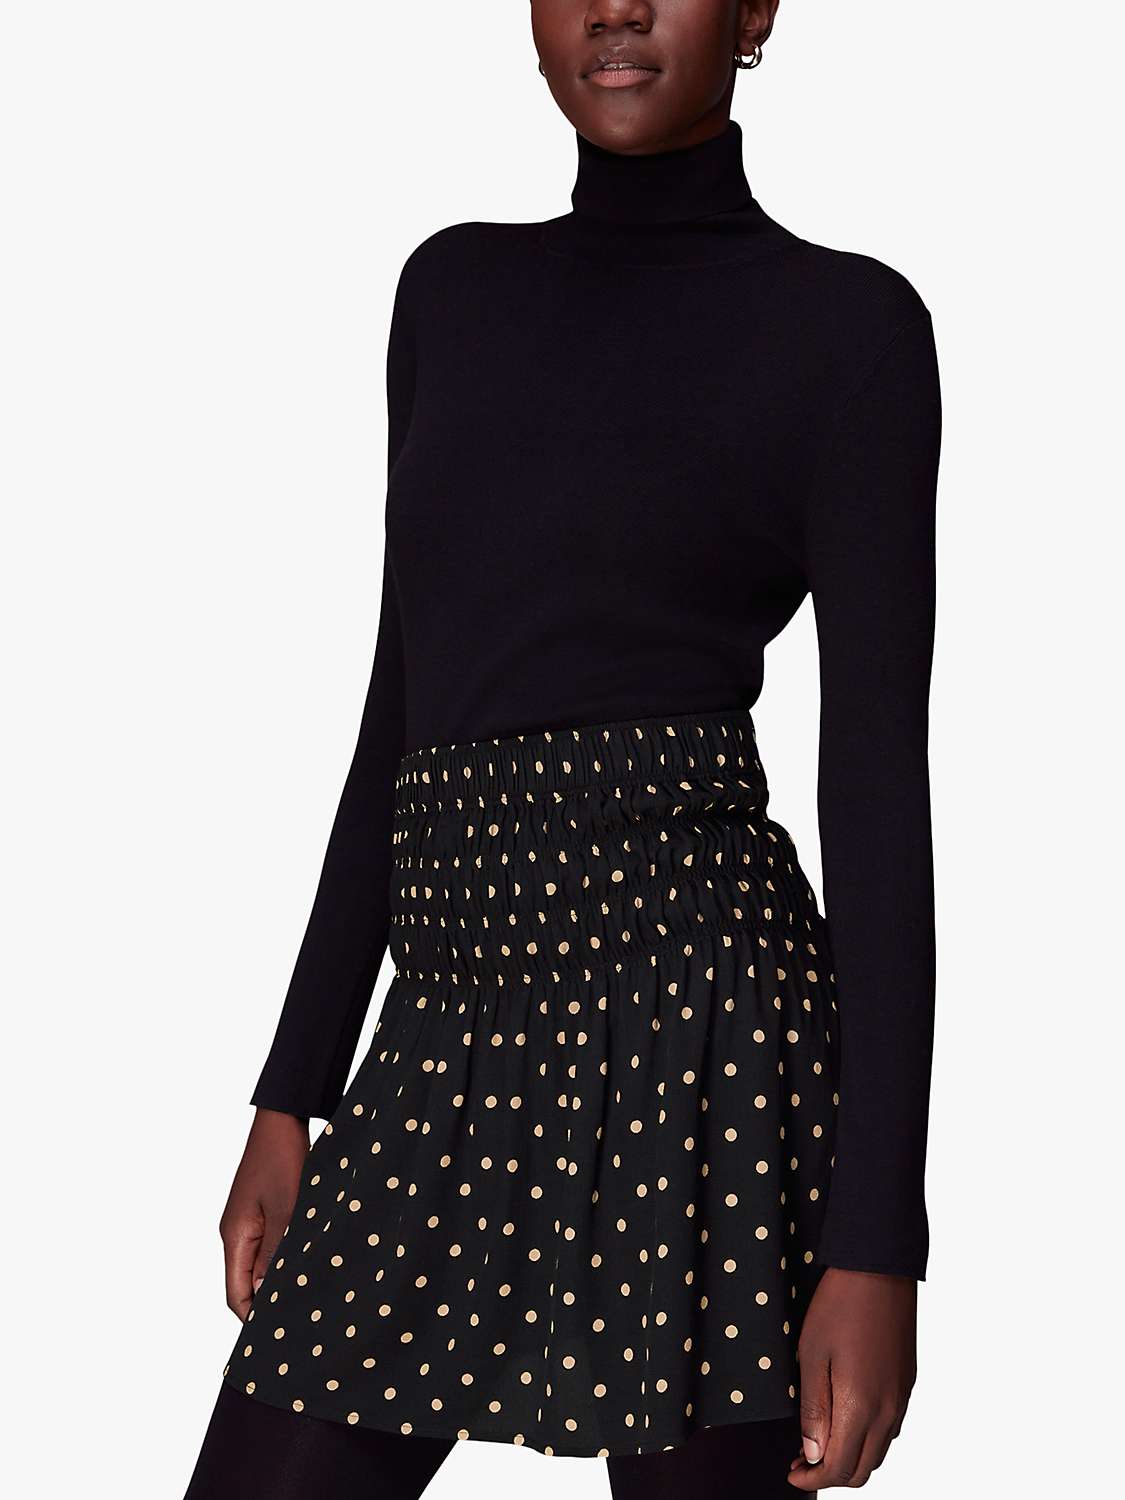 Buy Whistles Polka Dot Shirred Mini Skirt, Black/Multi Online at johnlewis.com